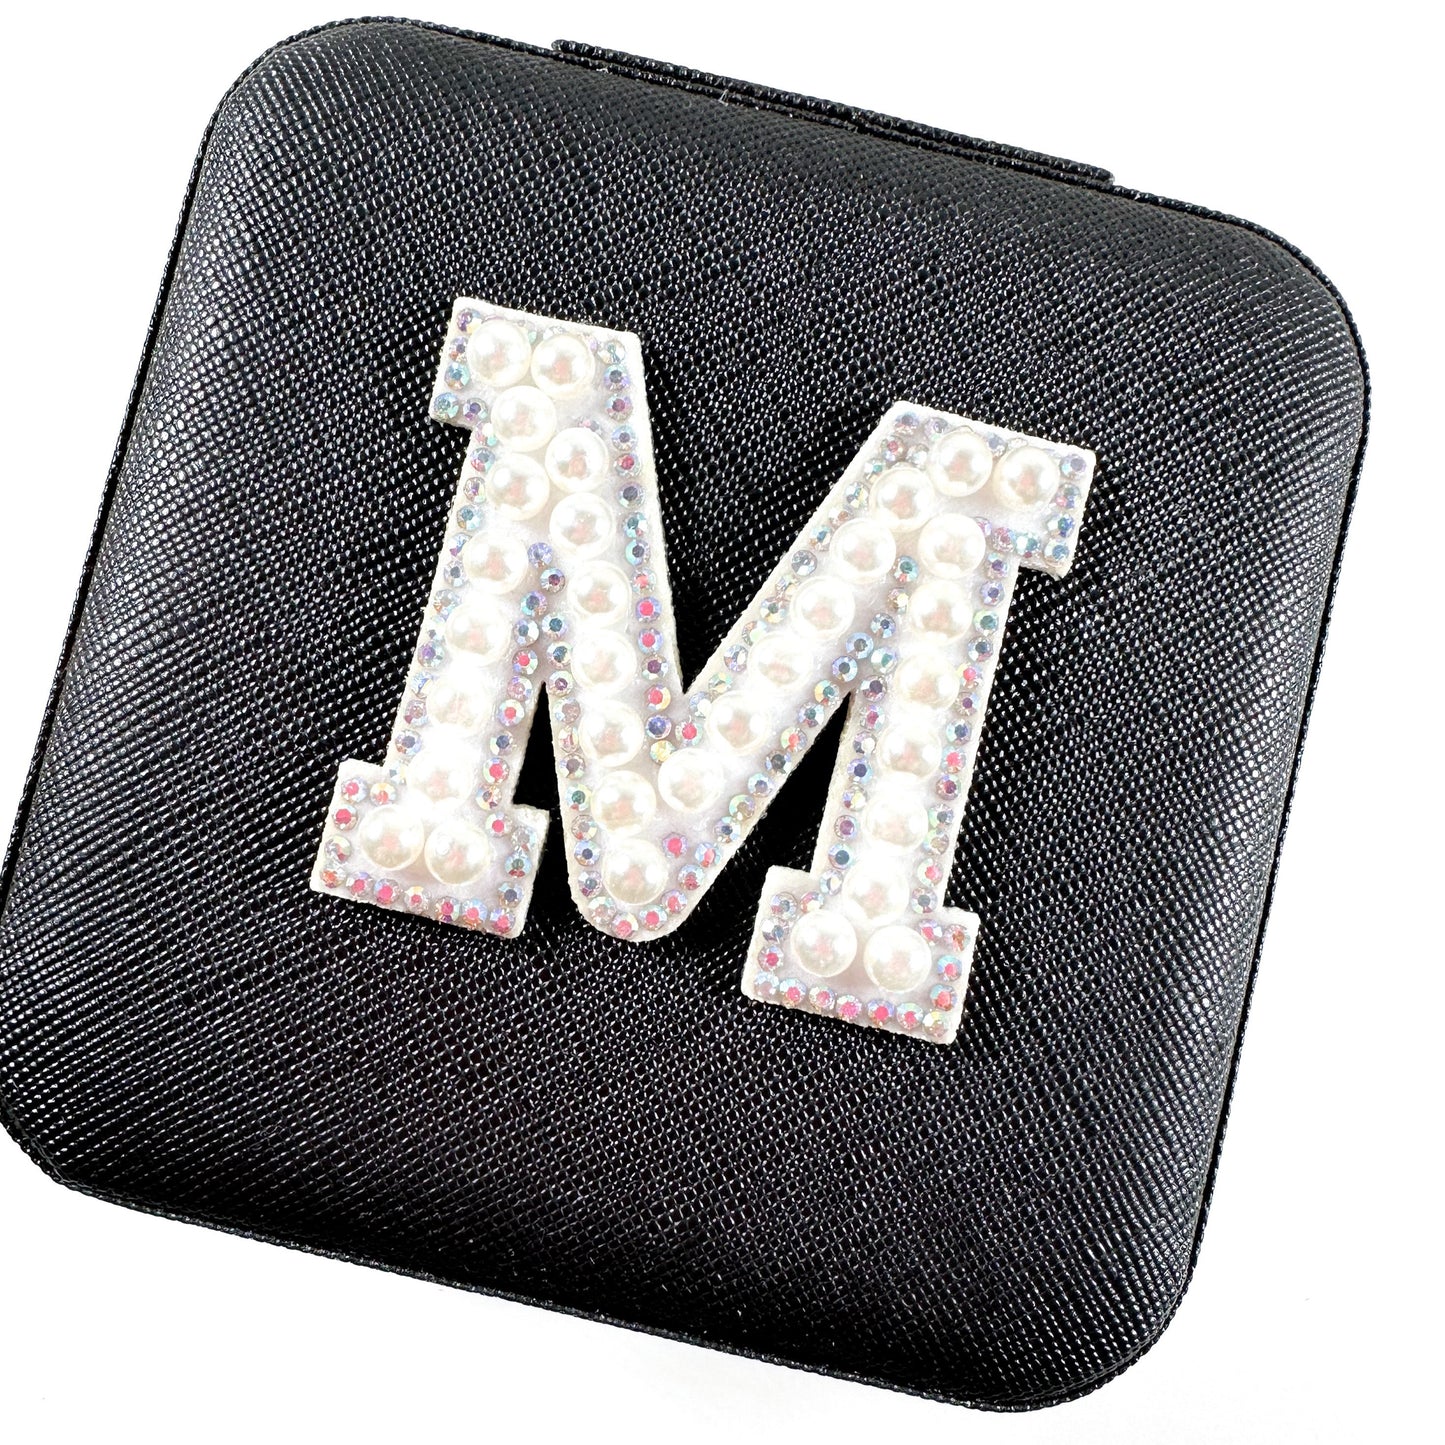 Monogram Leather Jewelry Box